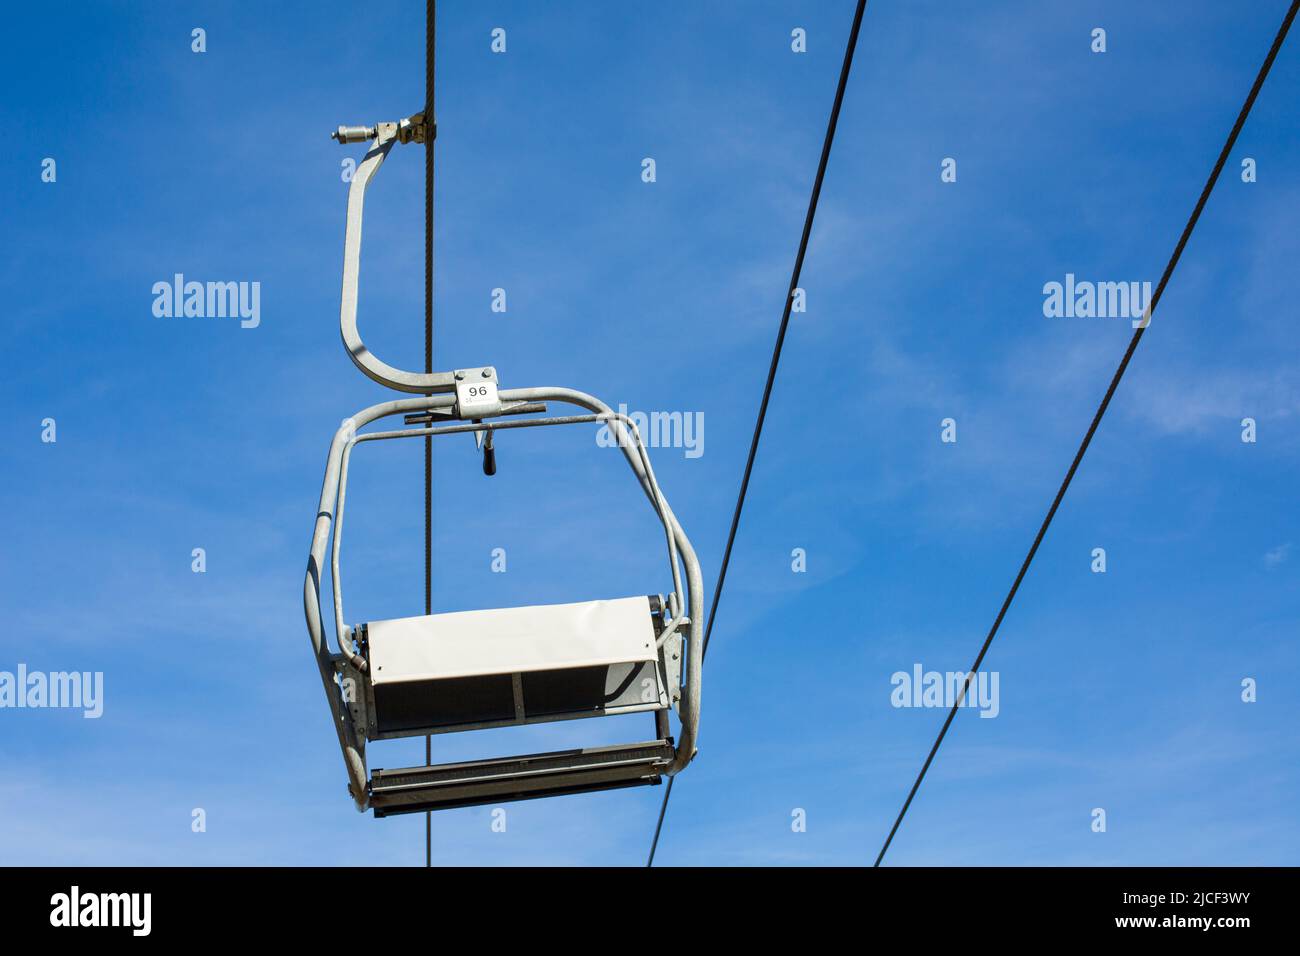 Oberammergau, Deutschland - 31. Okt 2021: Blick auf einen einzelnen, hängenden Sessellift. Blauer Himmel im Hintergrund, keine Menschen. Stockfoto